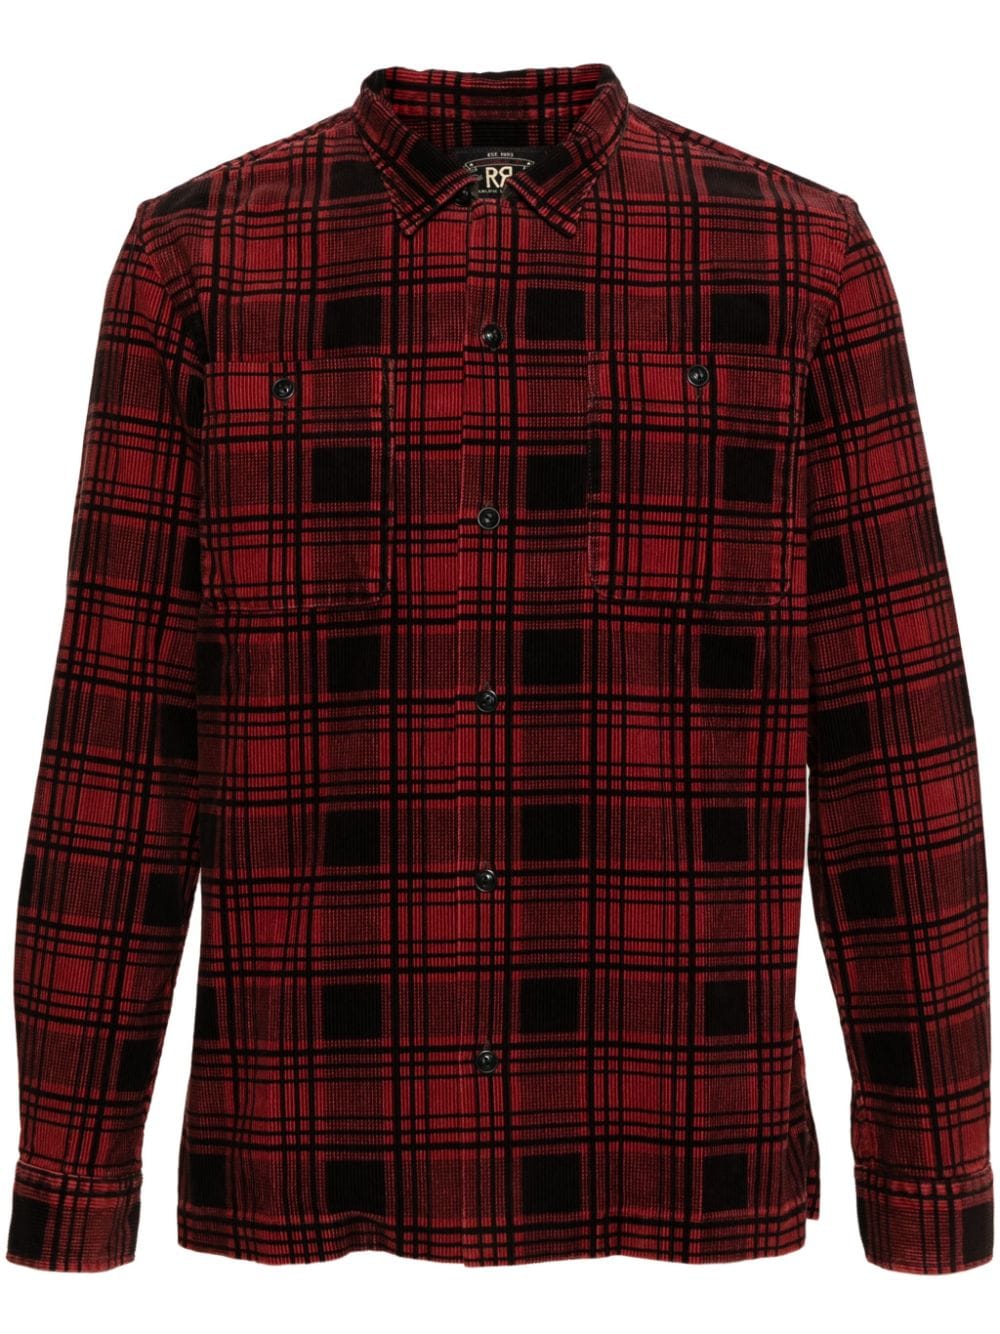 Ralph Lauren RRL Monterey cotton corduroy shirt - Red von Ralph Lauren RRL